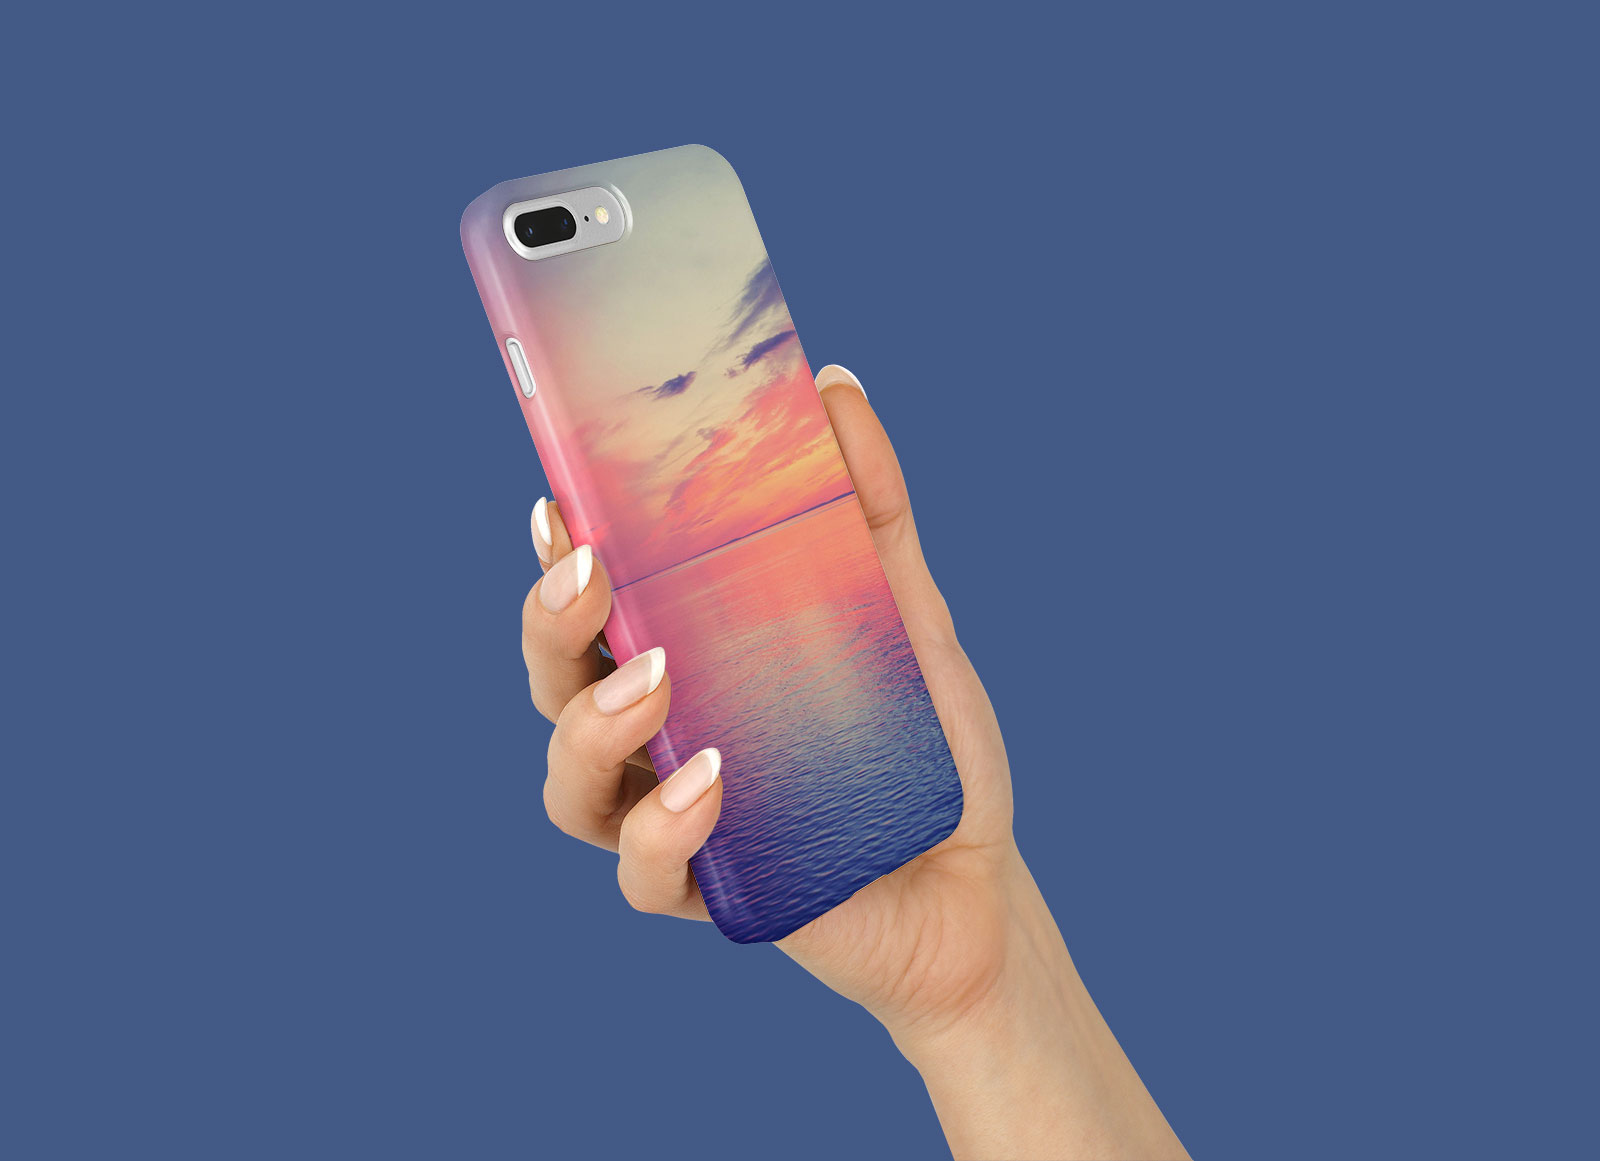 iPhone 8 Plus Plastic Case Mockup Set